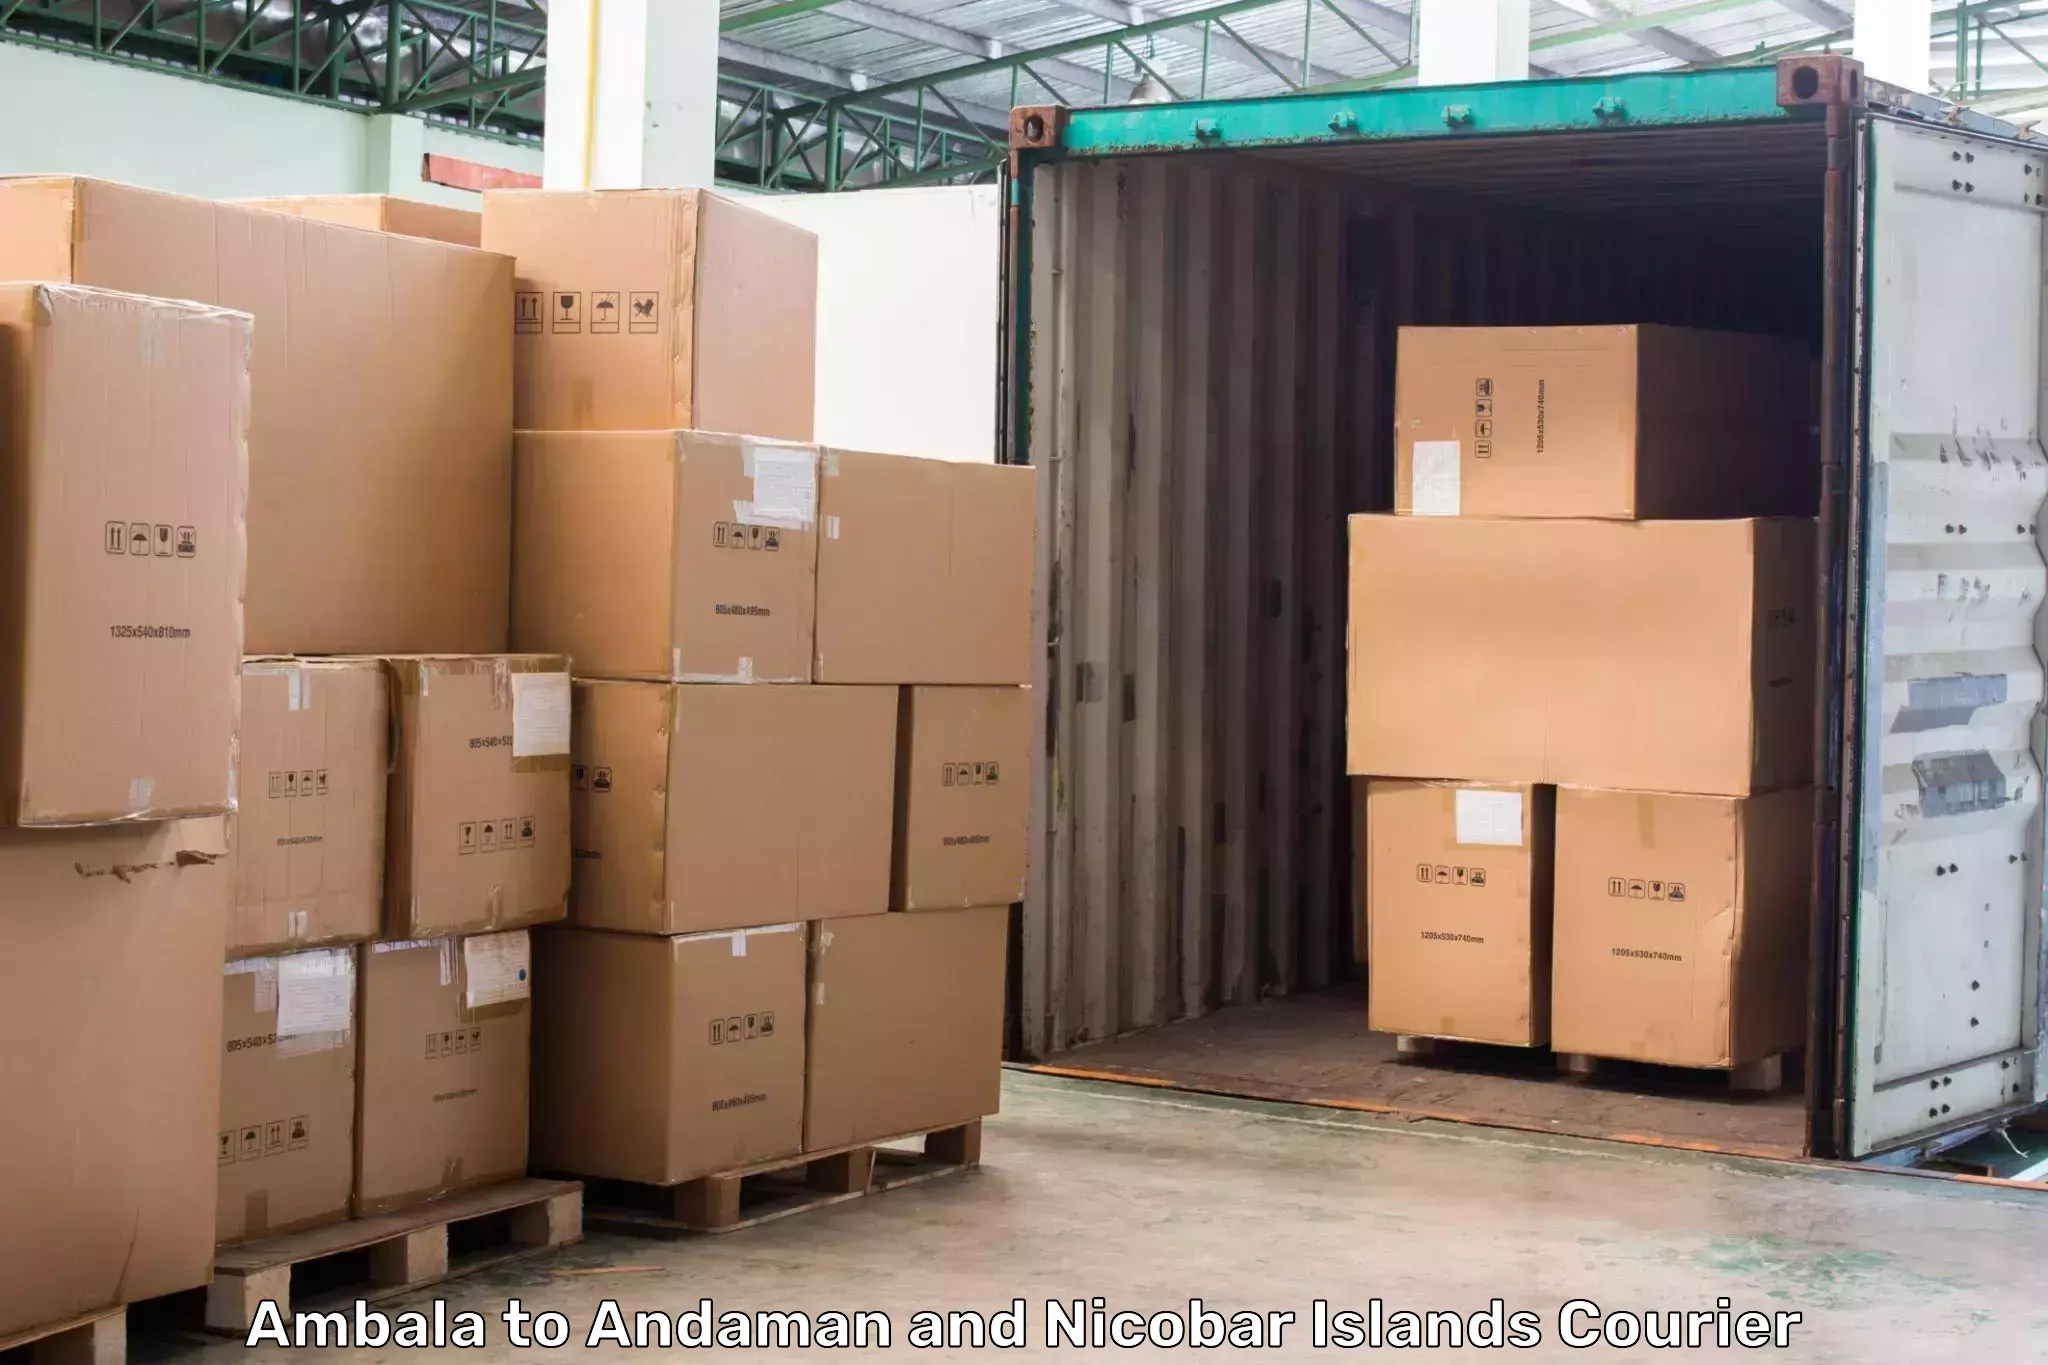 High-capacity shipping options Ambala to Andaman and Nicobar Islands